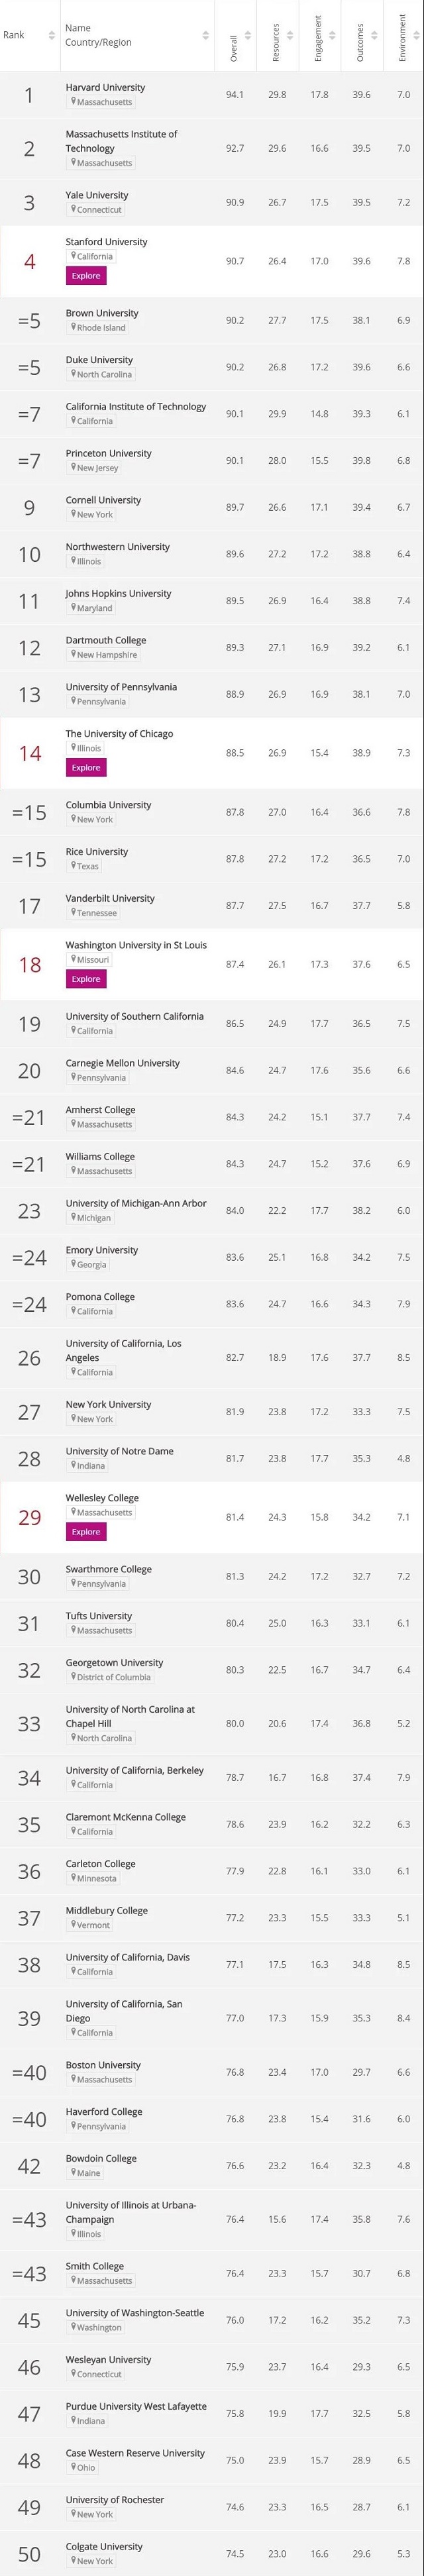 2021全美最佳大学排名Top100-1.jpg